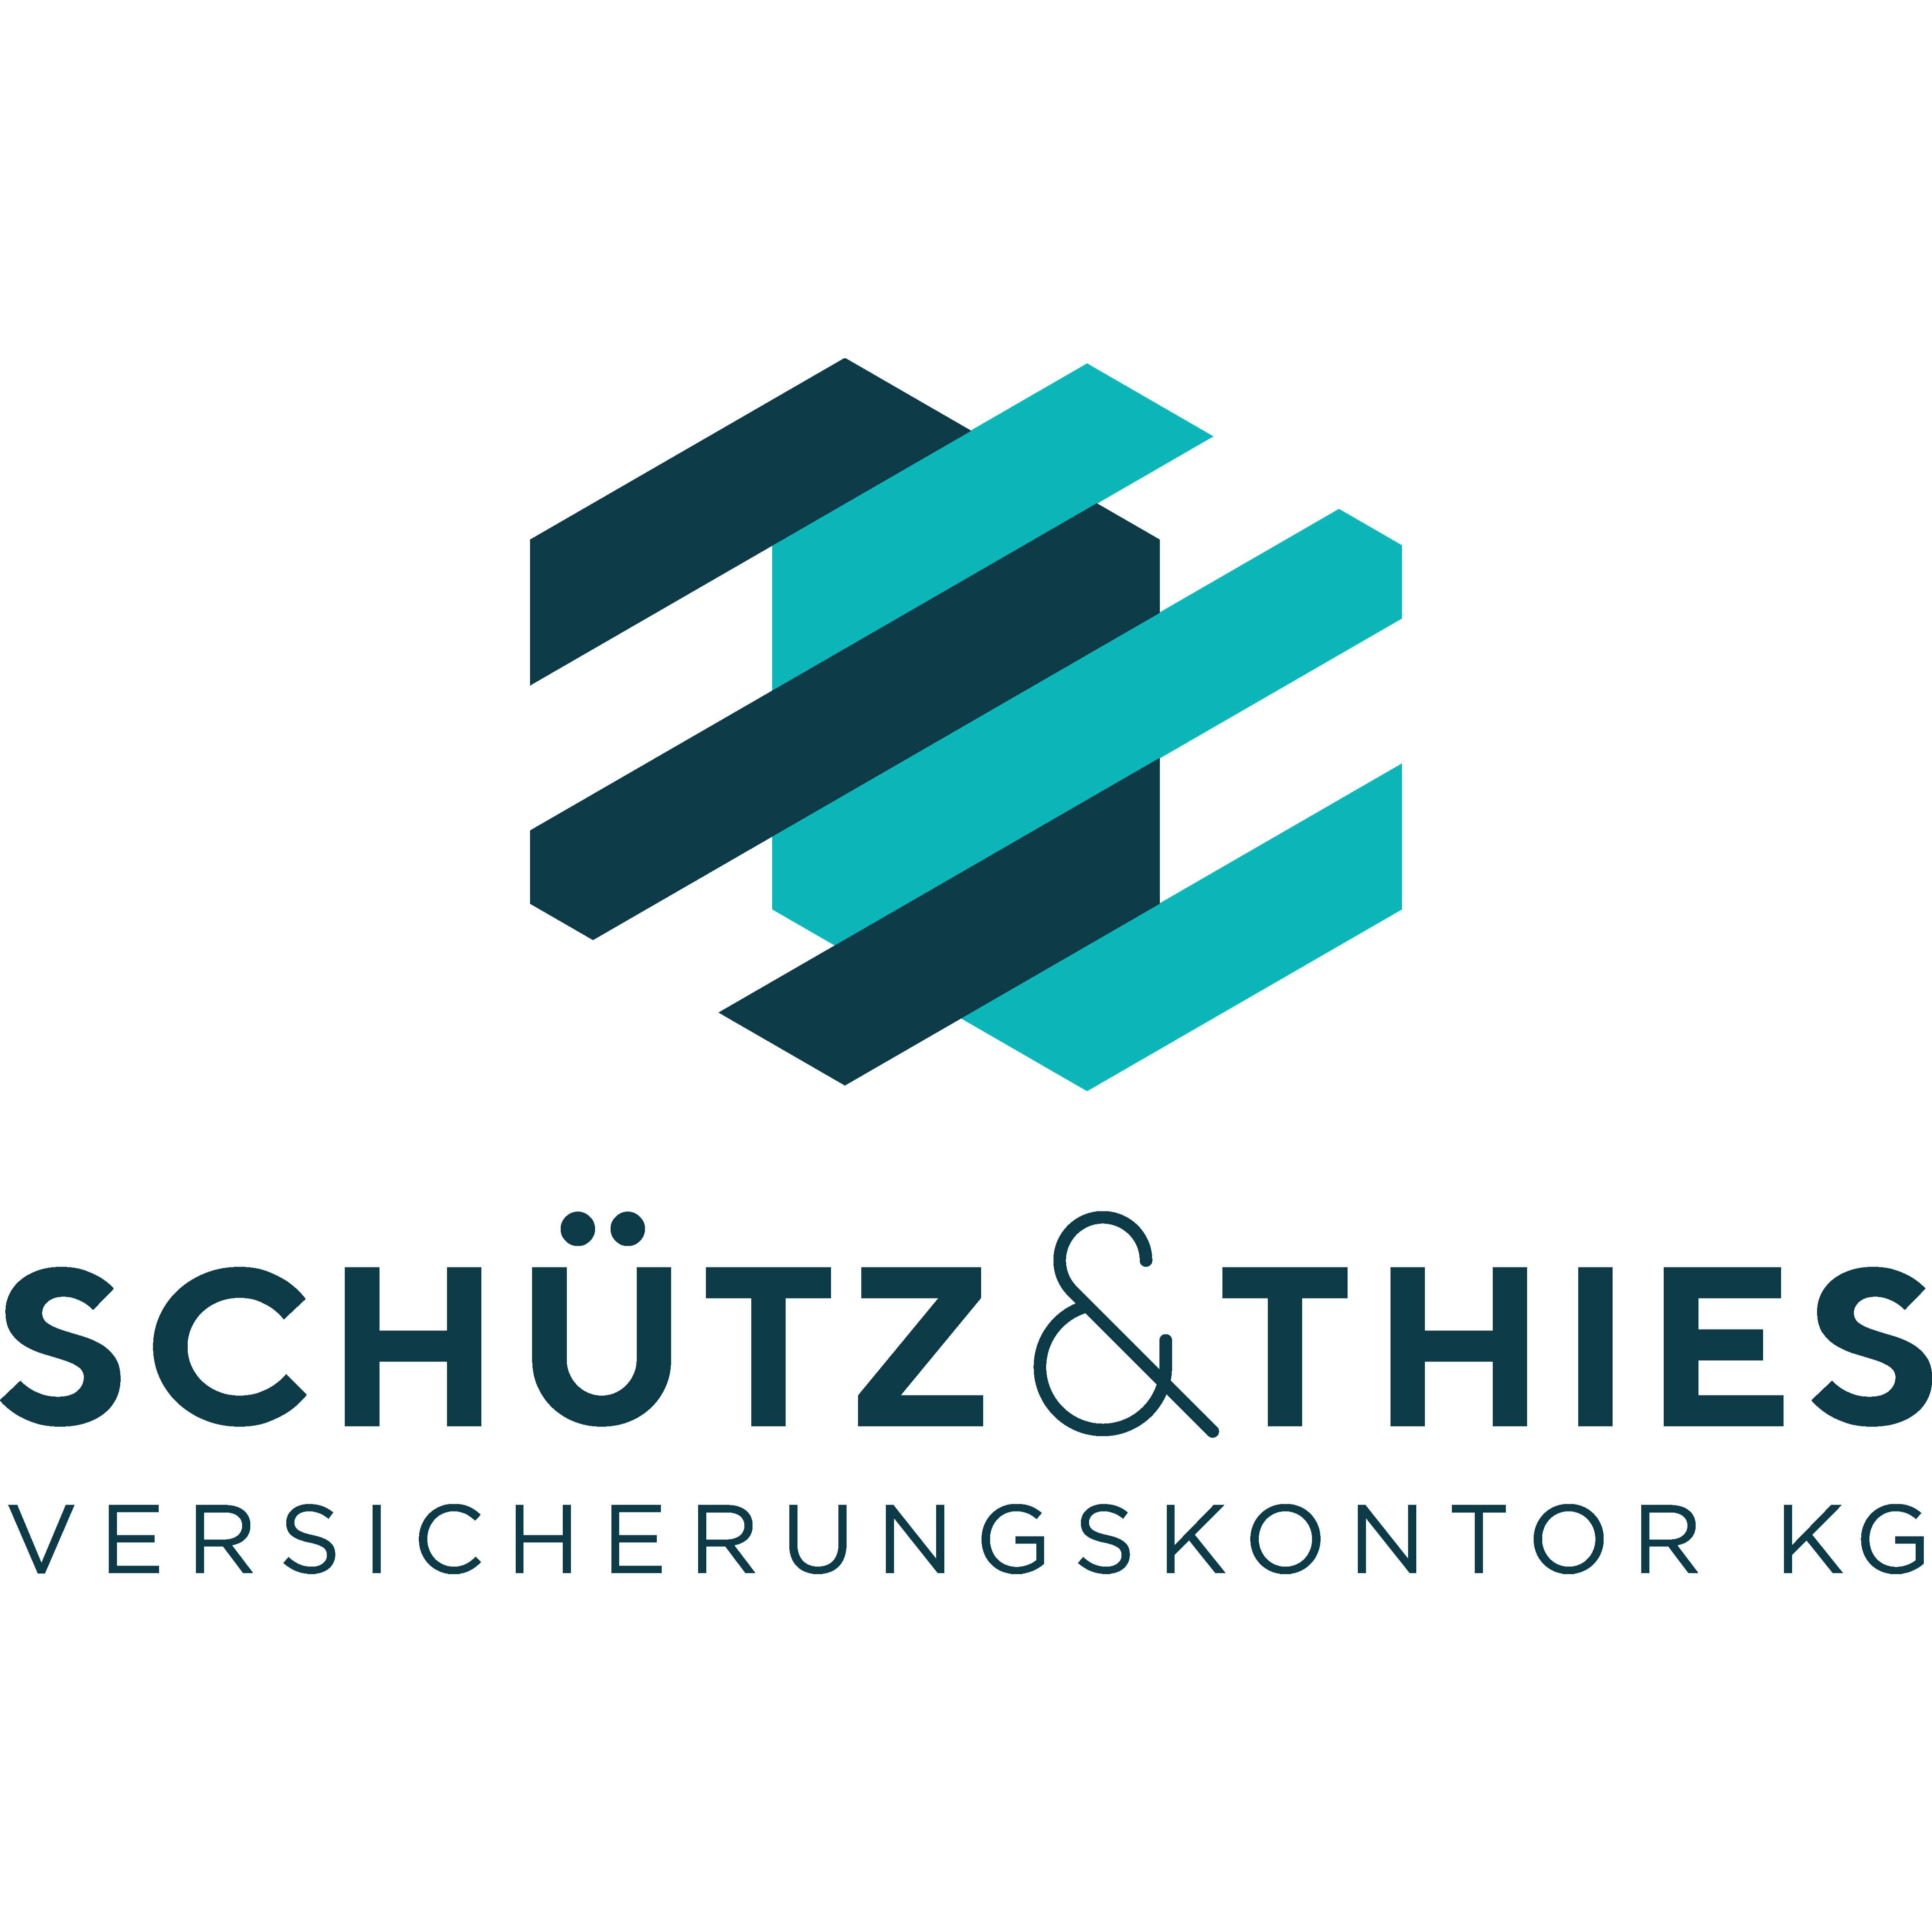 Schütz & Thies Versicherungskontor KG Logo